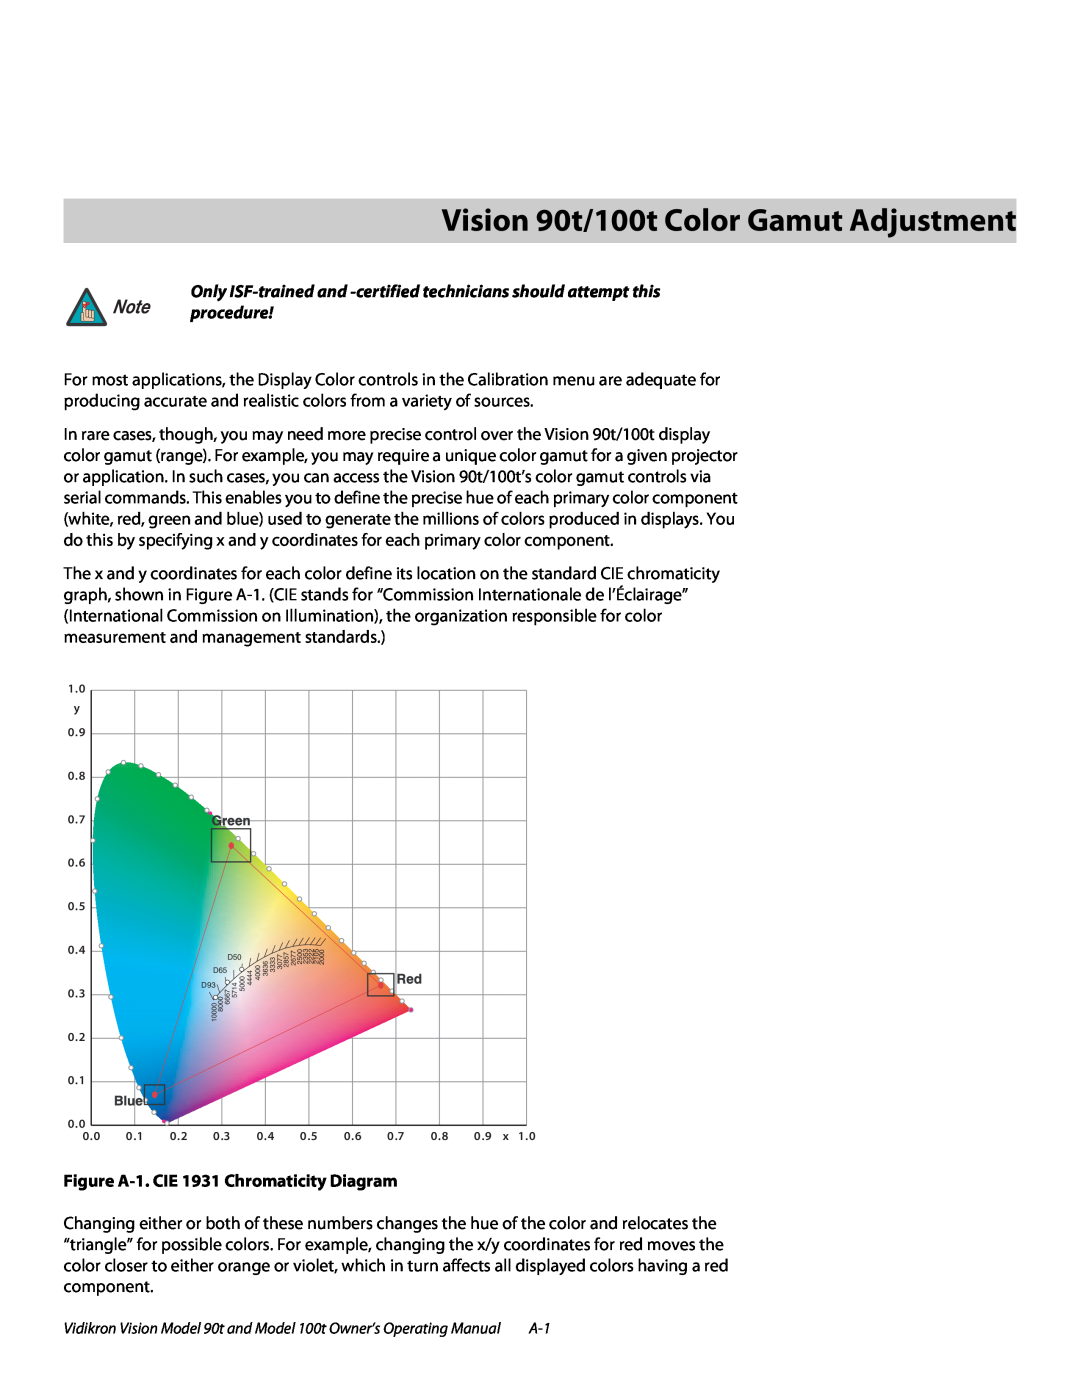 Vidikron Vision 100t AVision 90t/100t Color Gamut Adjustment, Note procedure, Figure A-1. CIE 1931 Chromaticity Diagram 